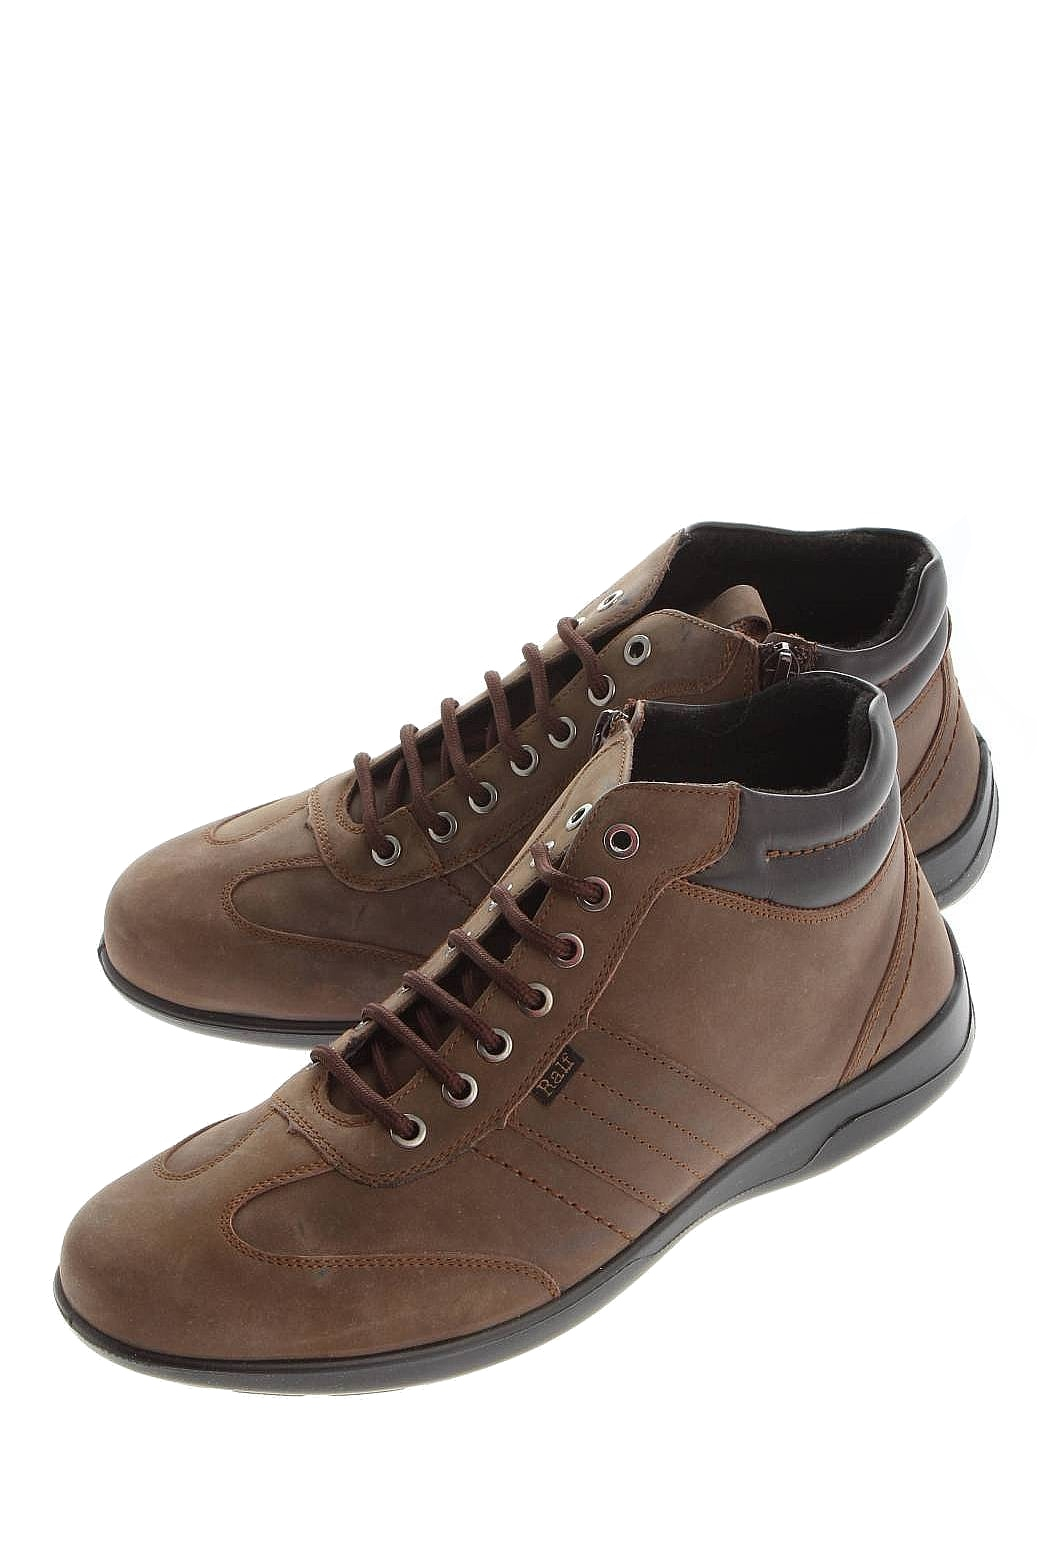 Мужская обувь ральф рингер цена. Ботинки мужские ray 582318кн. Ральф Рингер обувь мужская демисезонная. Ботинки Ральф Рингер мужские коричневые. Ральф Рингер обувь мужская коричневые.